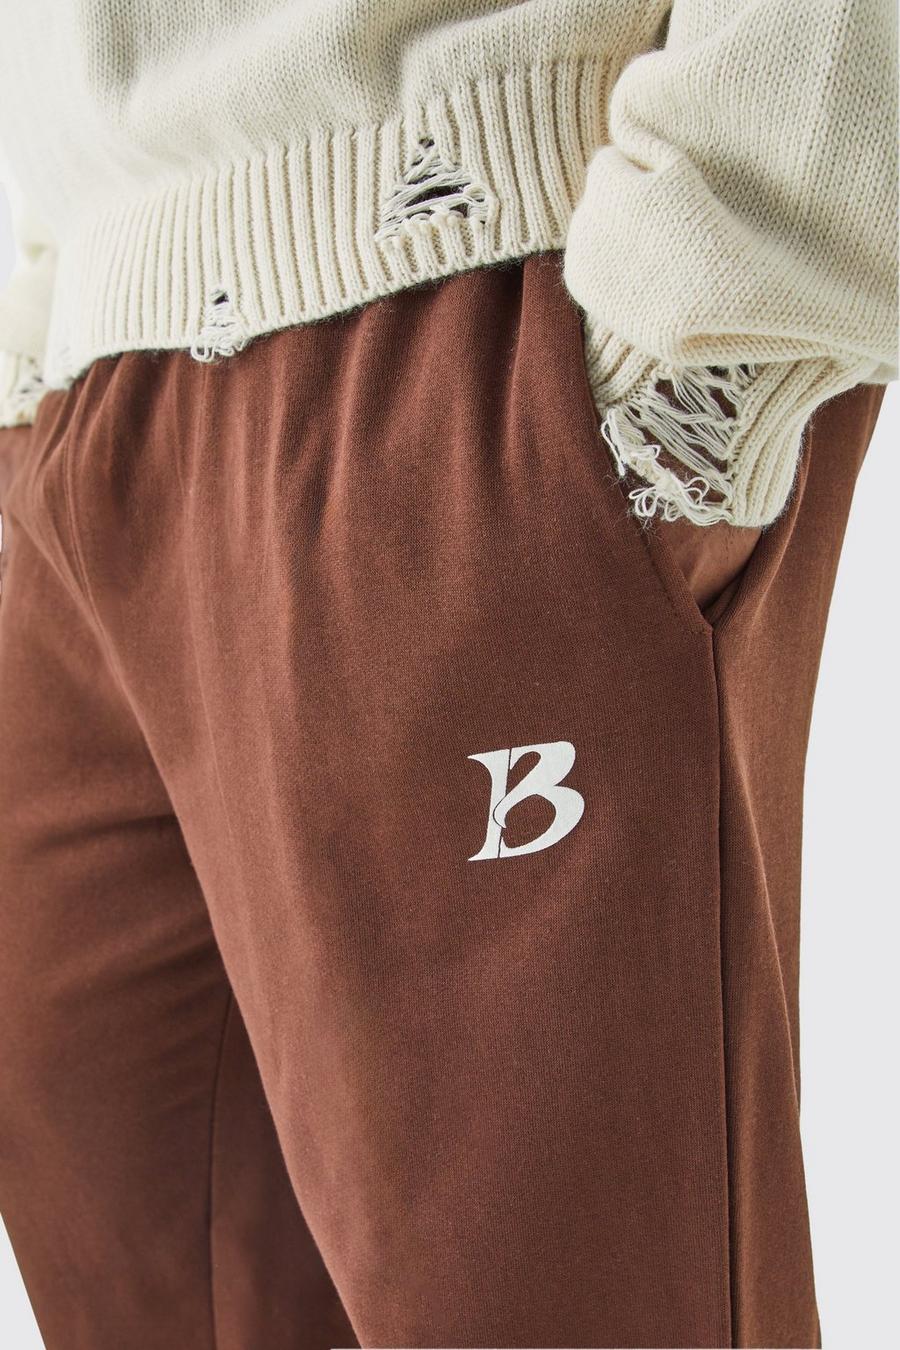 Pantalón deportivo Plus con eslogan Core B en color chocolate image number 1